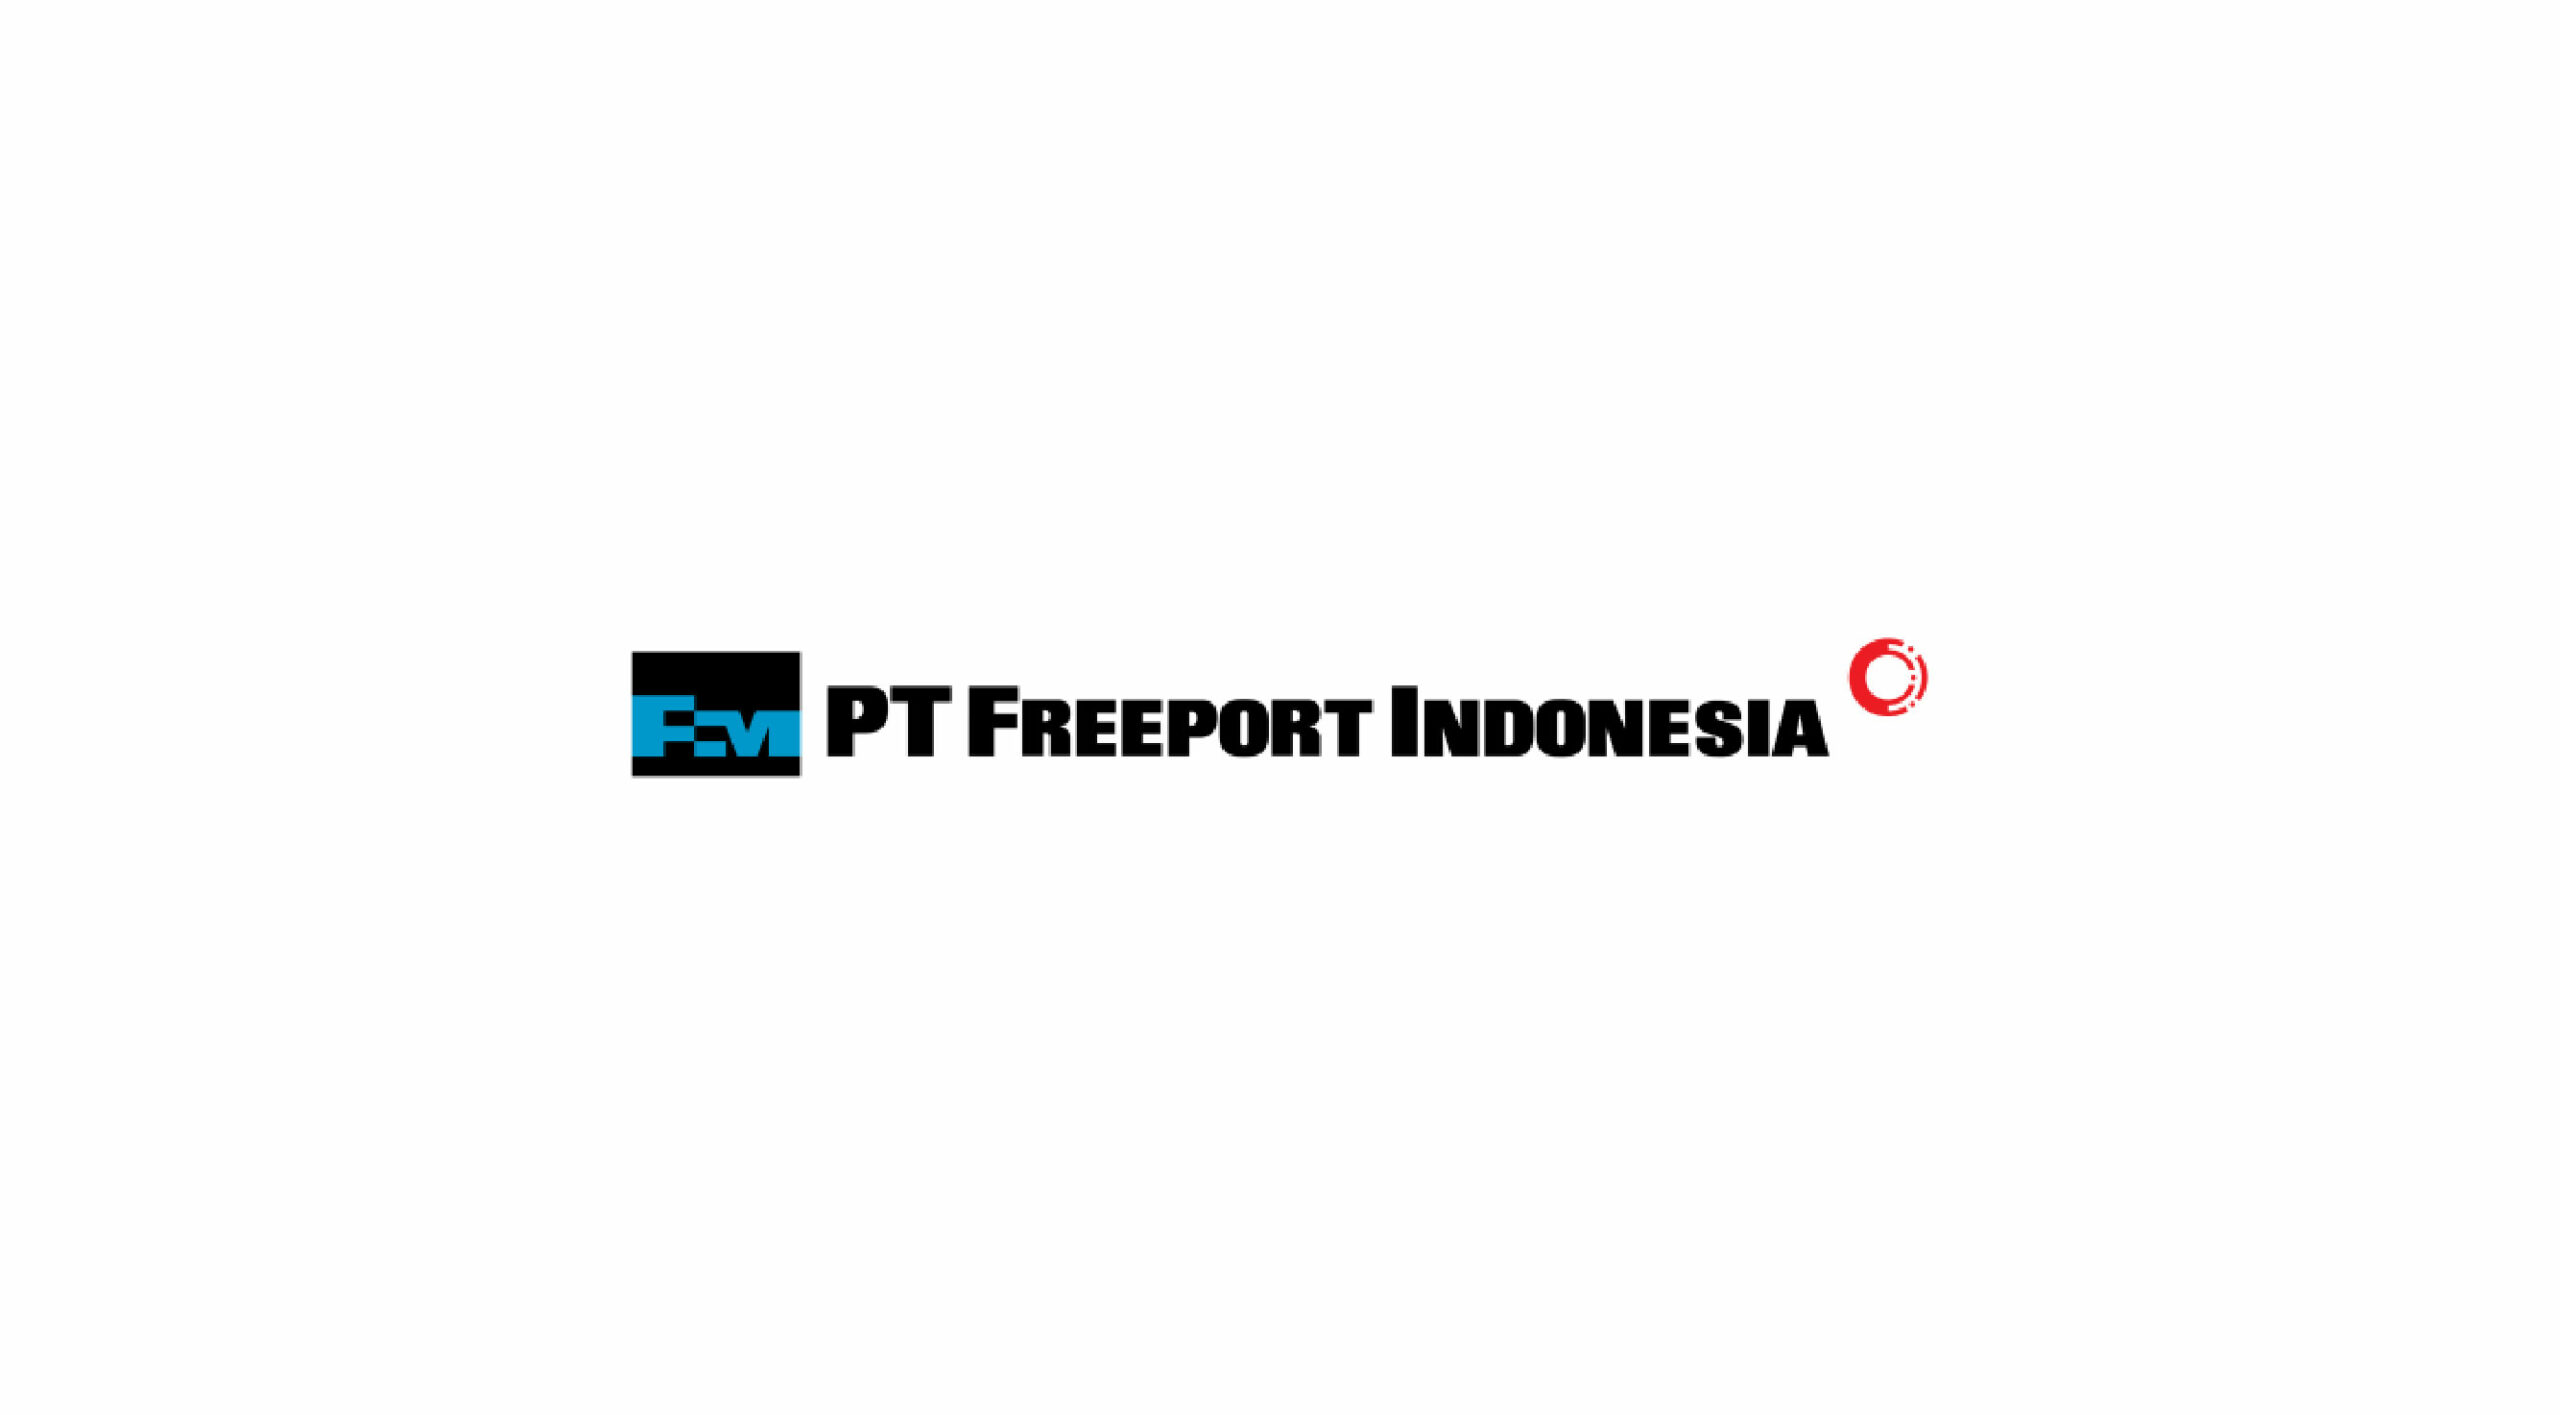 Lowongan Kerja PT Freeport Indonesia